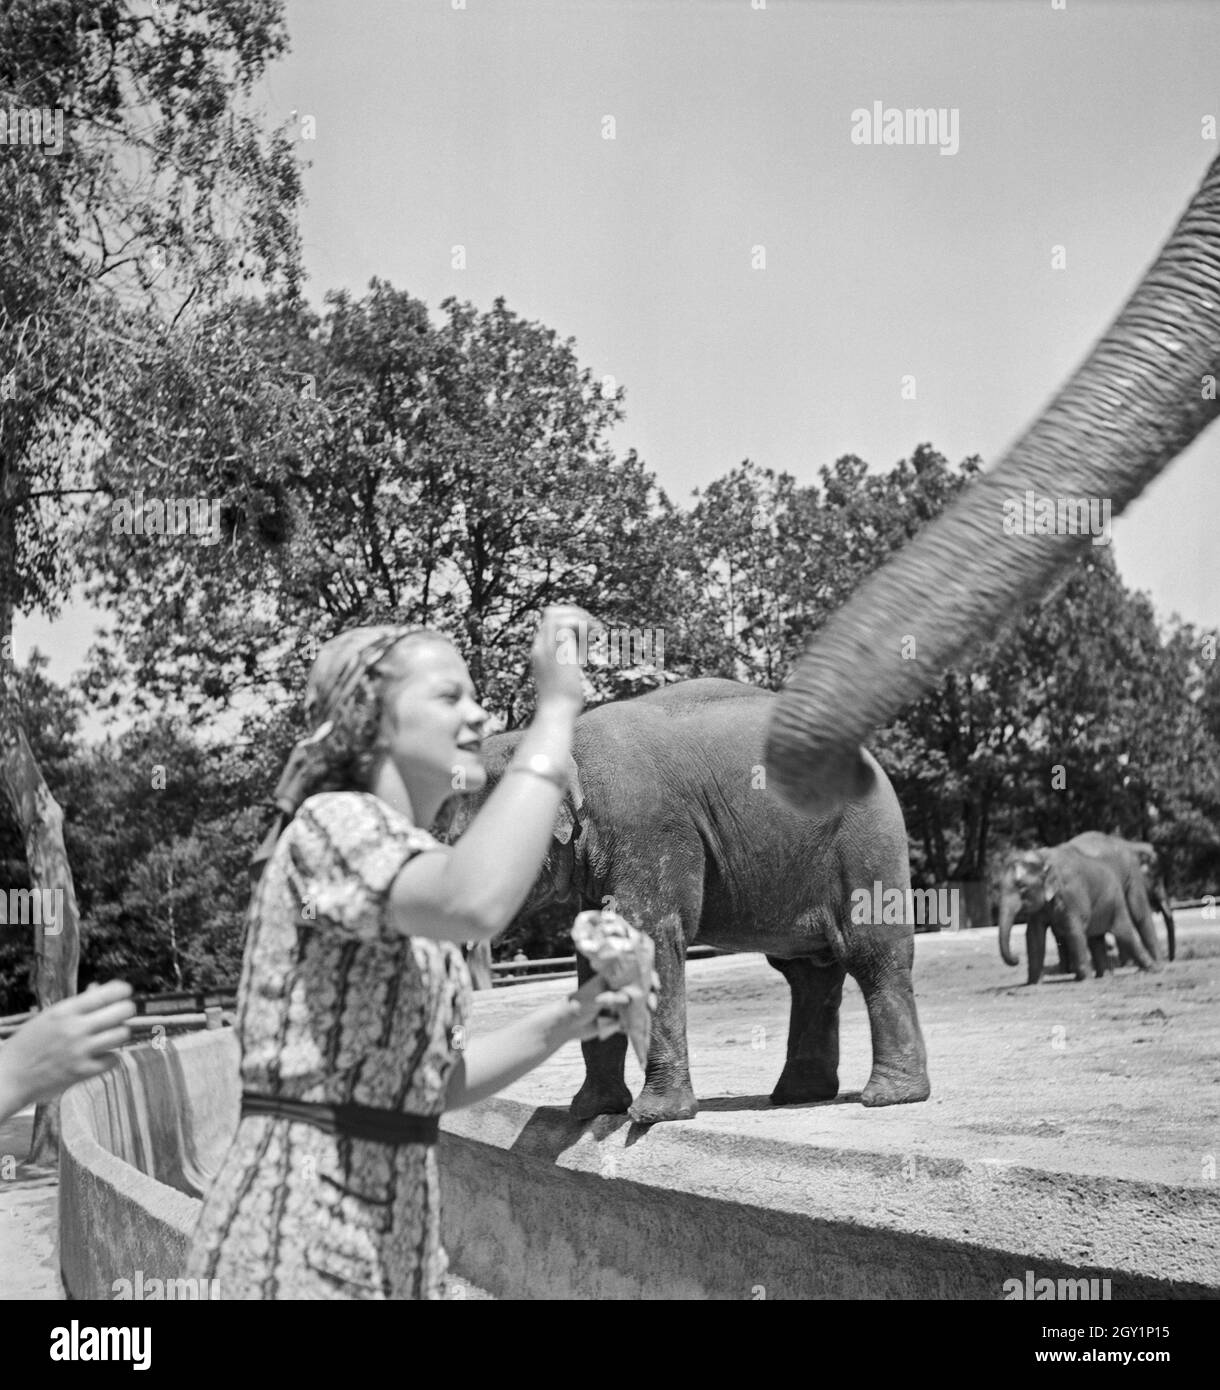 Eine Frau am Elefantengehege im Wilhlema Tierpark in Stuttgart, Deutschland 1930er Jahre. A woman at the elephant compound at Wilhelma zoological garden in Stuttgart, Germany 1930s. Stock Photo